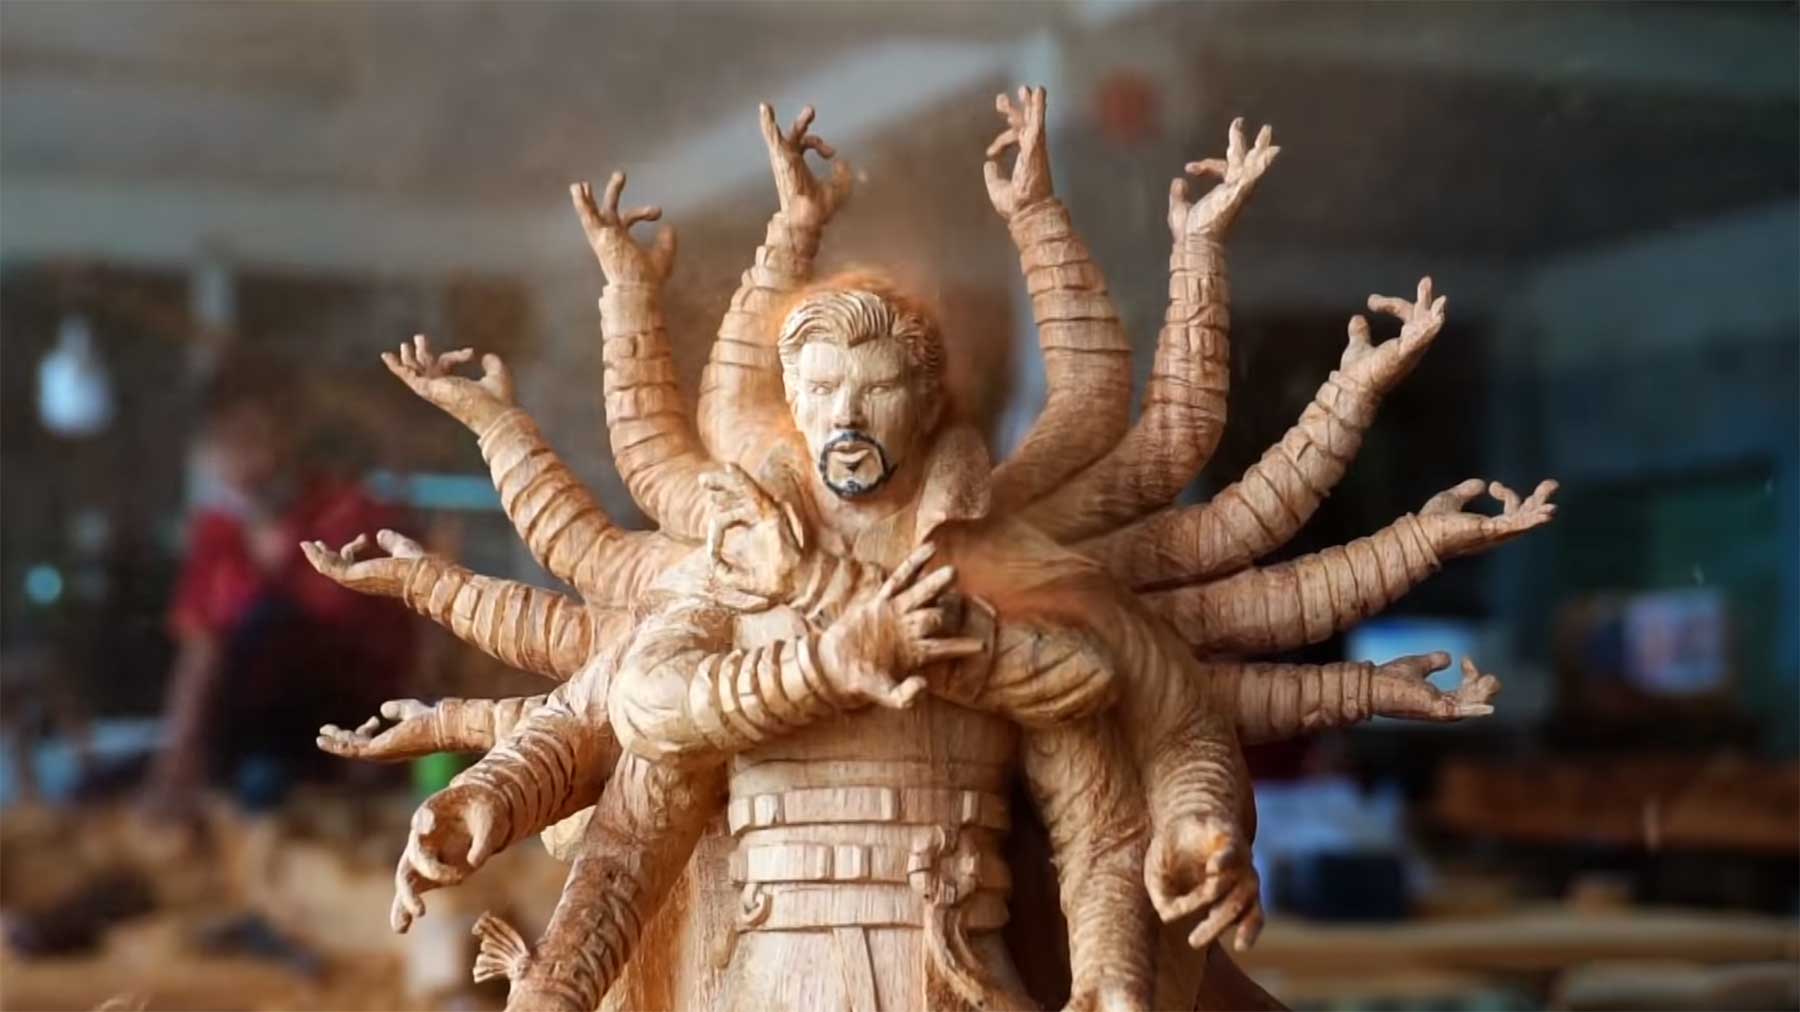 Geschnitzte Holzskulptur von Doctor Strange Doctor-Strange-holzskulptur-geschnitzt 